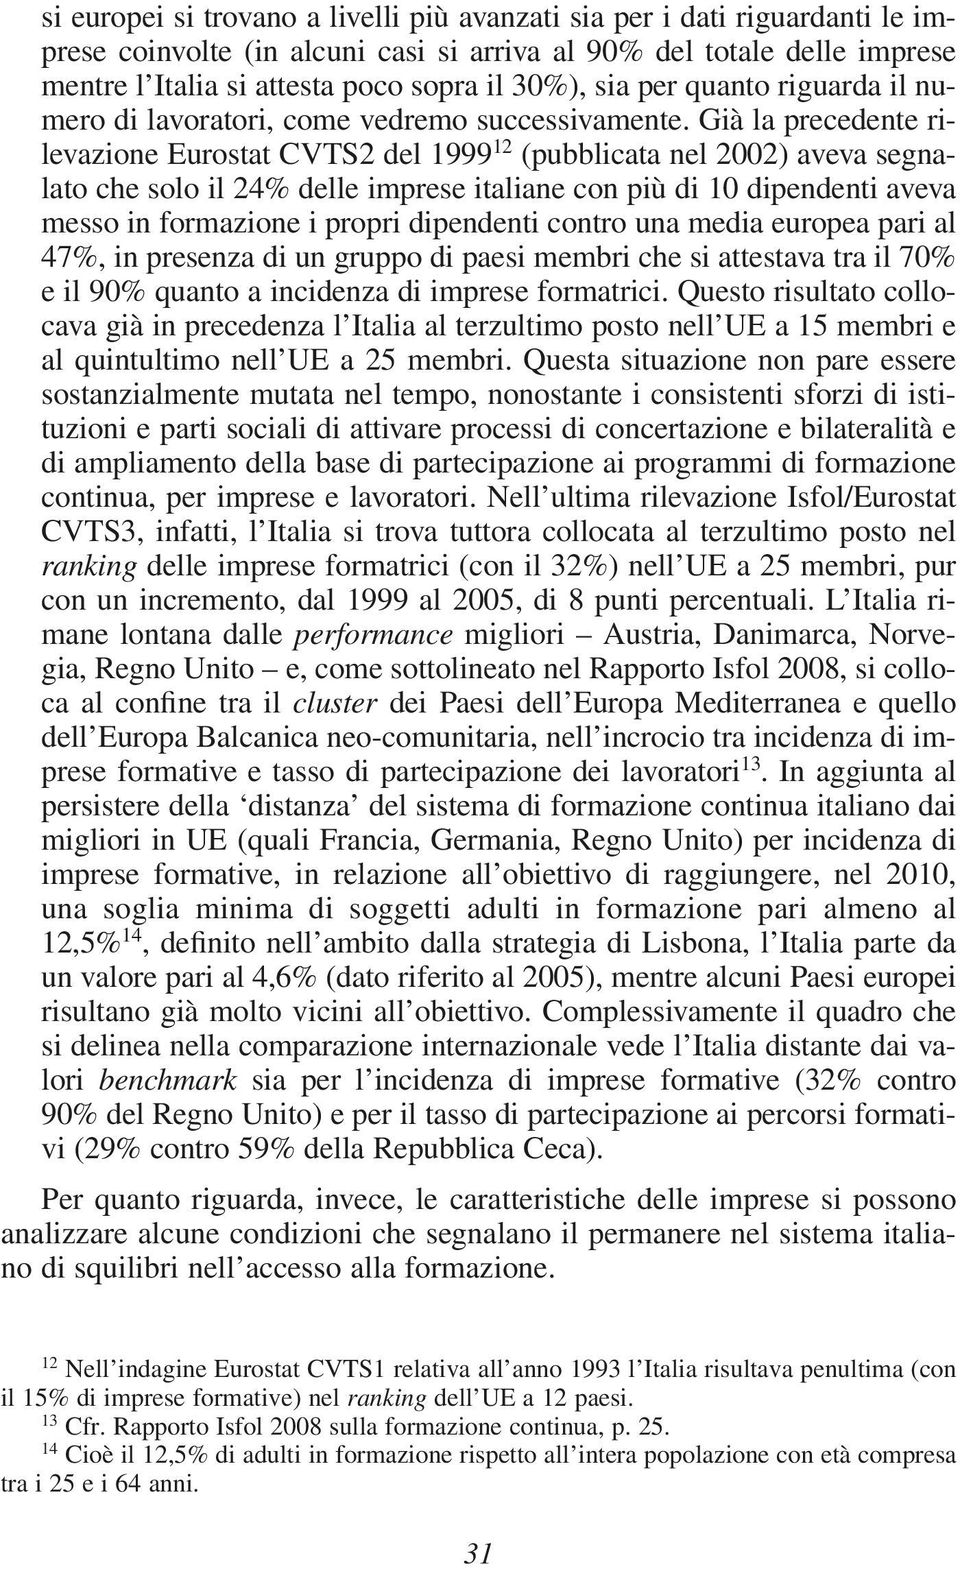 Già la precedente rilevazione Eurostat CVTS2 del 1999 12 (pubblicata nel 2002) aveva segnalato che solo il 24% delle imprese italiane con più di 10 dipendenti aveva messo in formazione i propri